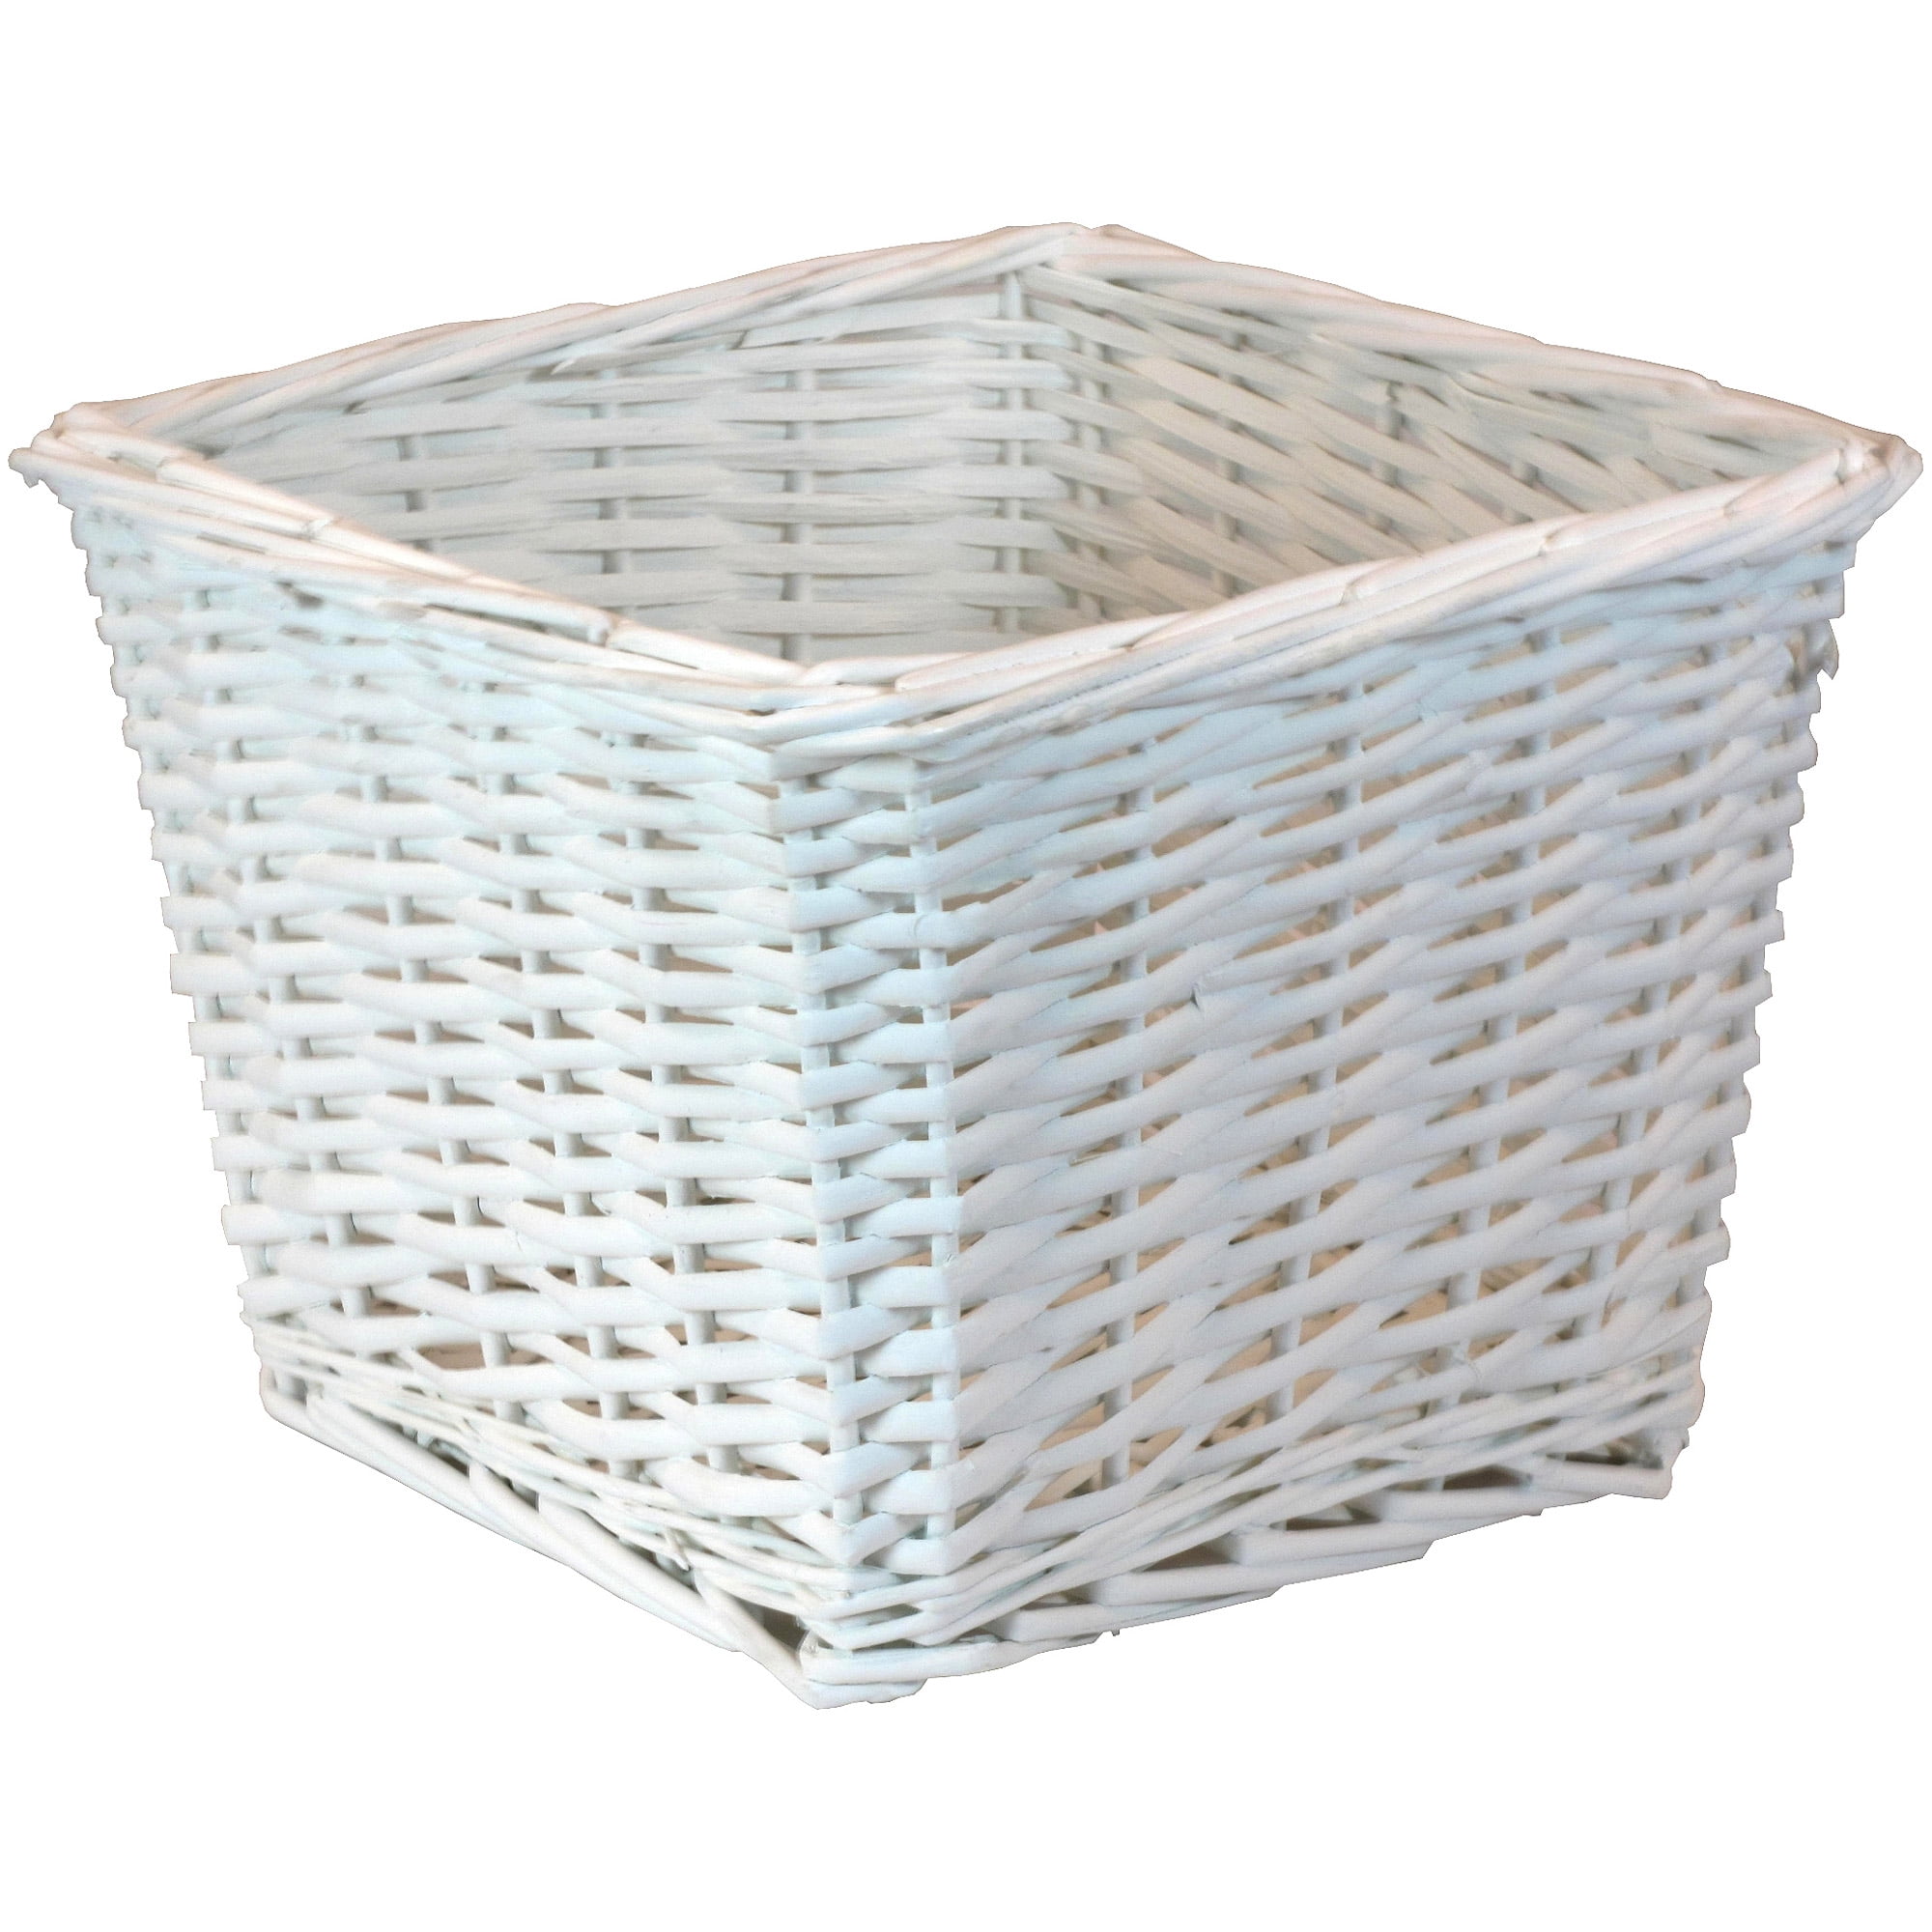 10x10 storage baskets